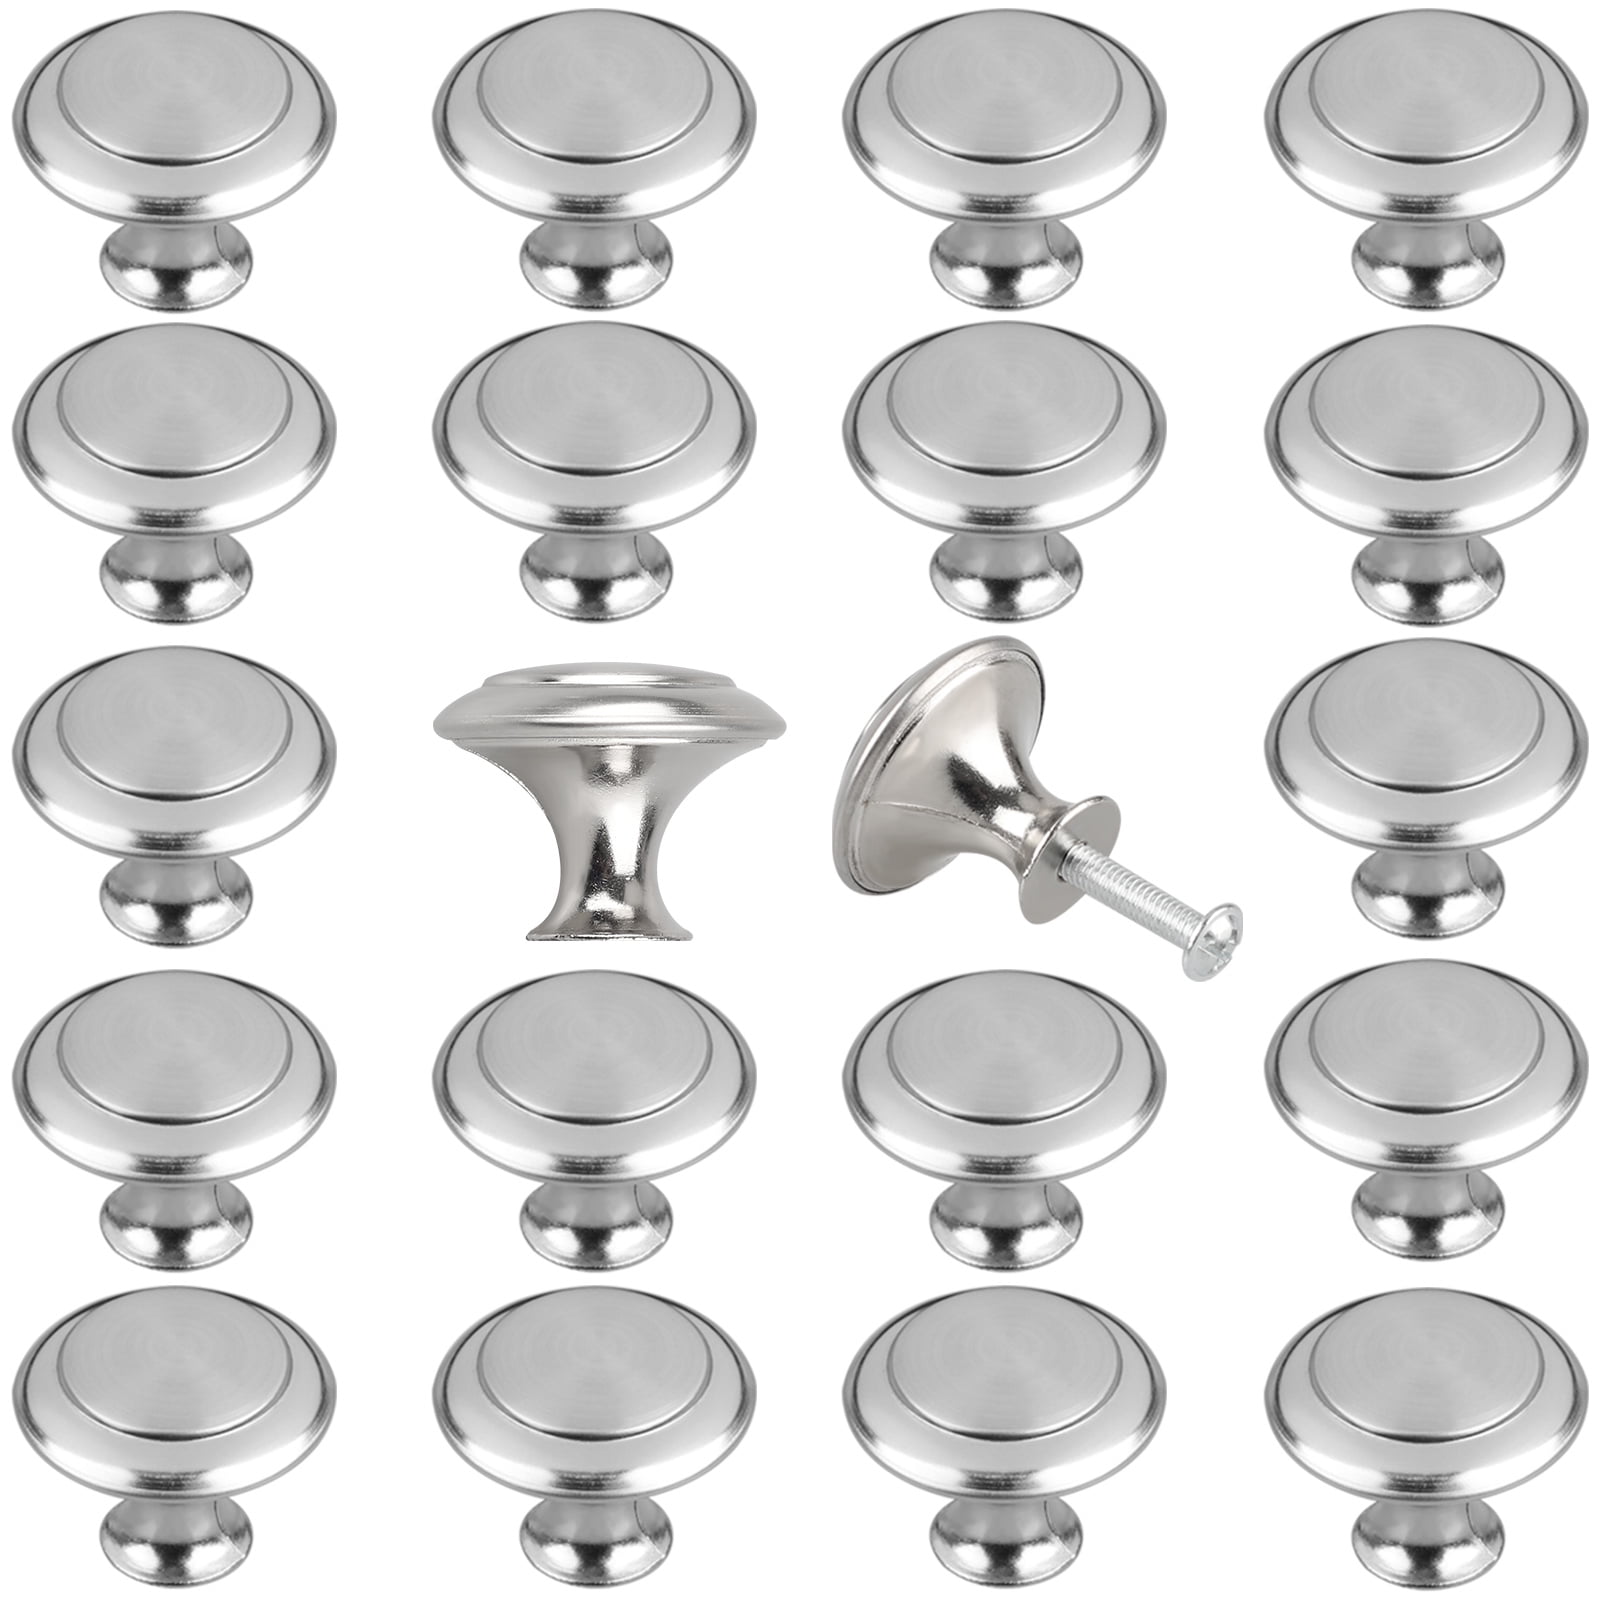 SALE/Silver Knob/ Brushed Metal knob/Dresser knob/ Cabinet Drawer Hardware/Round knob/Cabinet knobs/Kitchen knobs/